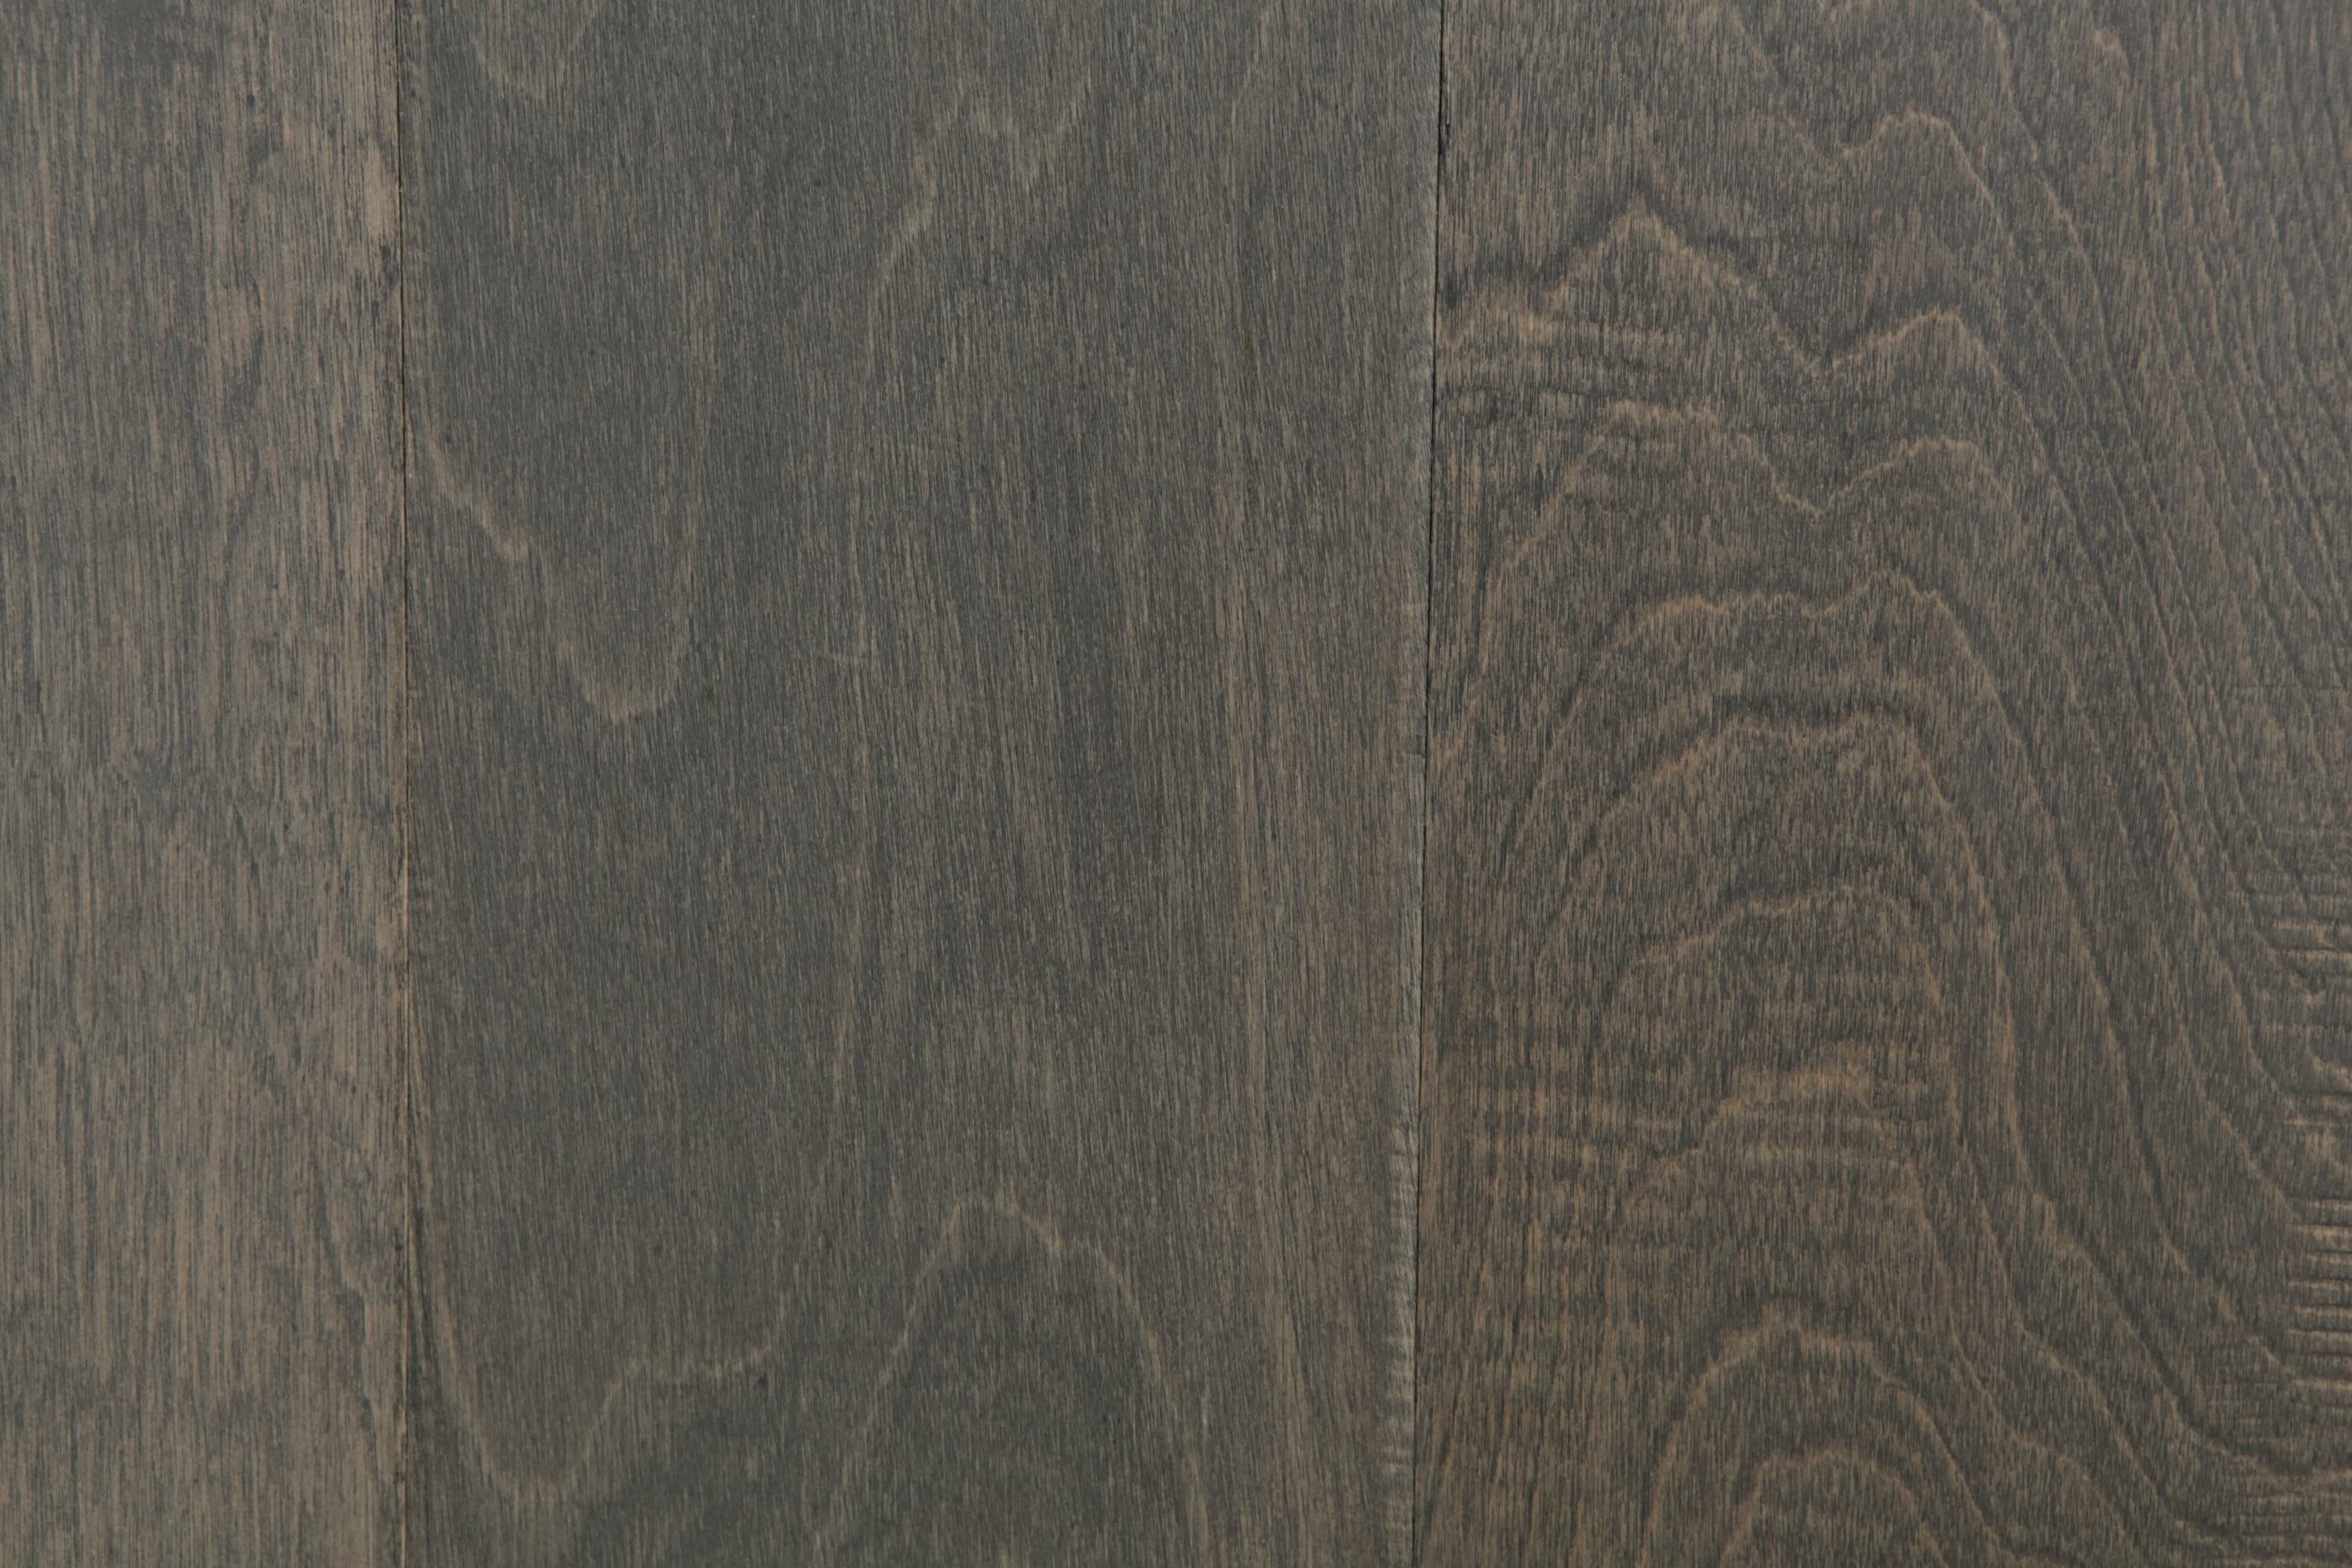 Hardwood Flooring Dallas - Wood Floors - iDeal Floors